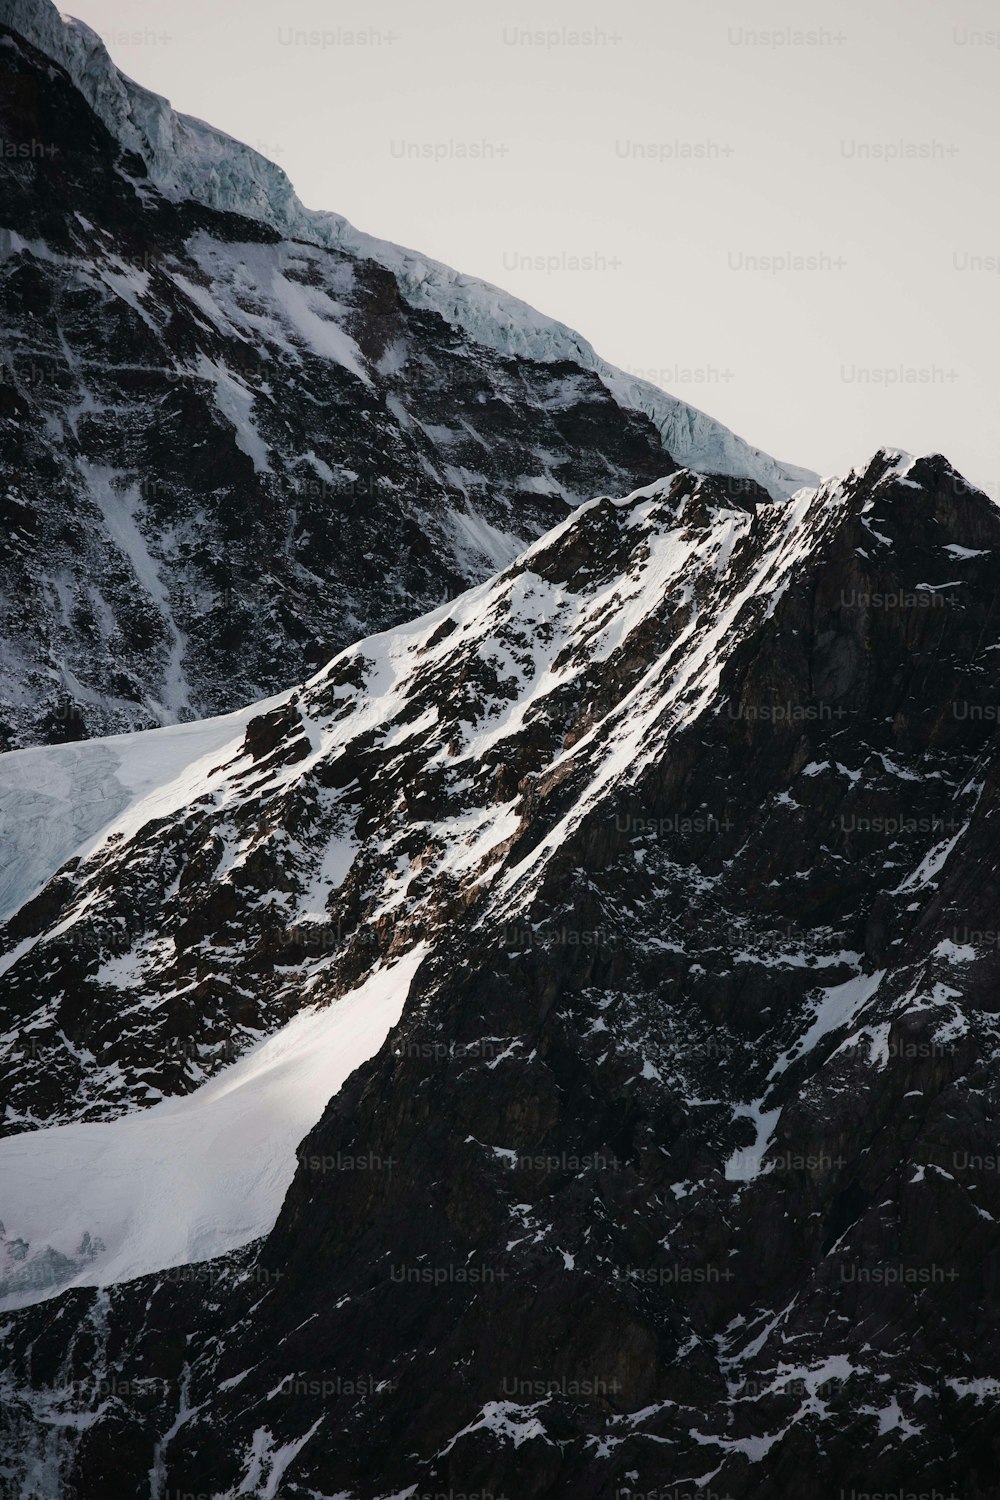 Un snowboarder descend une montagne enneigée